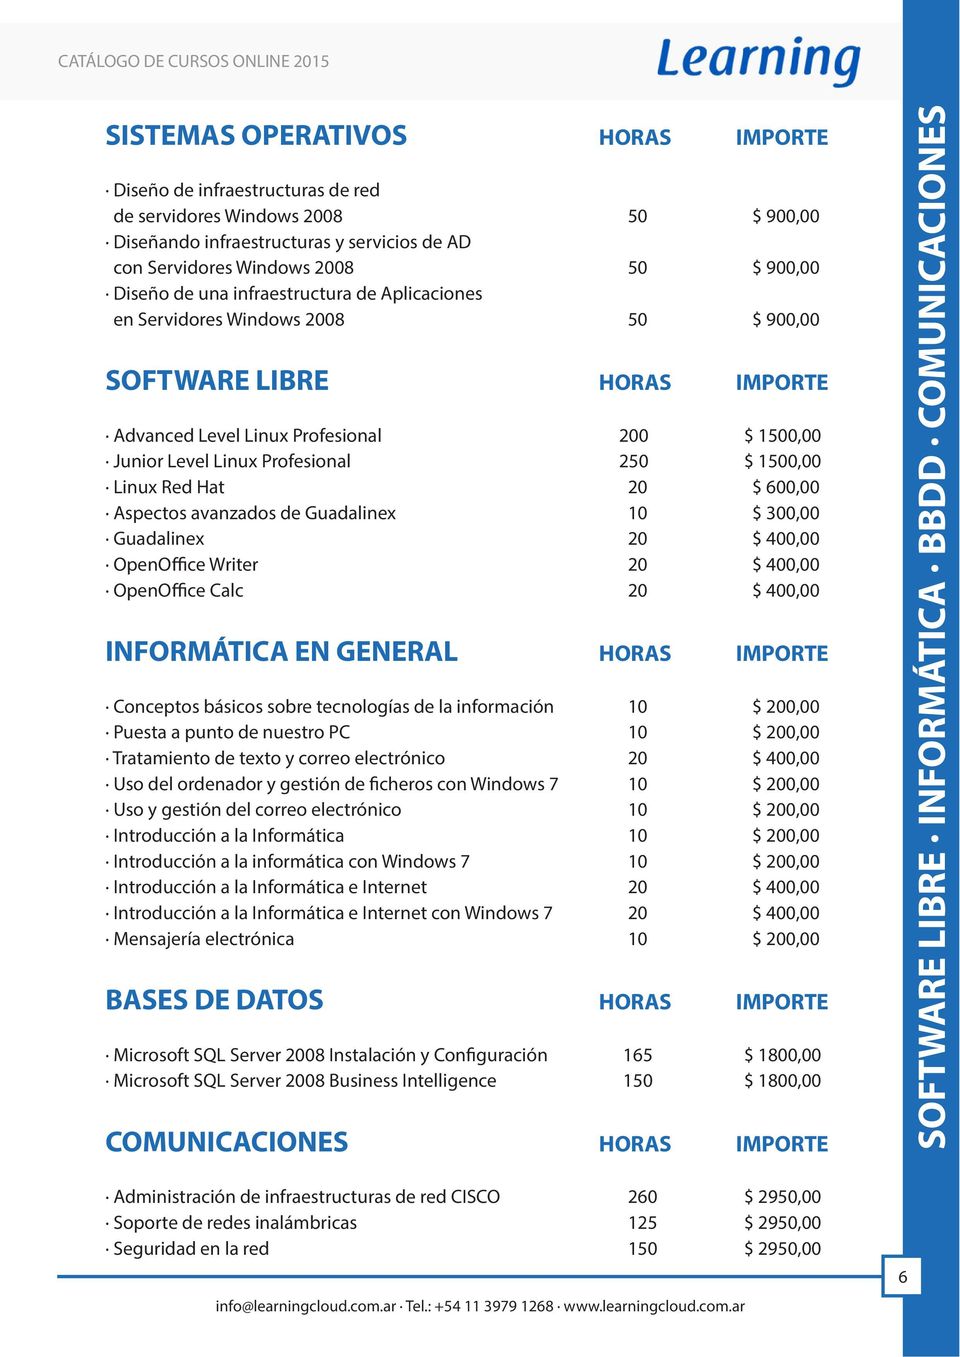 Linux Red Hat 20 $ 600,00 Aspectos avanzados de Guadalinex 10 $ 300,00 Guadalinex 20 $ 400,00 OpenOffice Writer 20 $ 400,00 OpenOffice Calc 20 $ 400,00 INFORMÁTICA EN GENERAL HORAS IMPORTE Conceptos